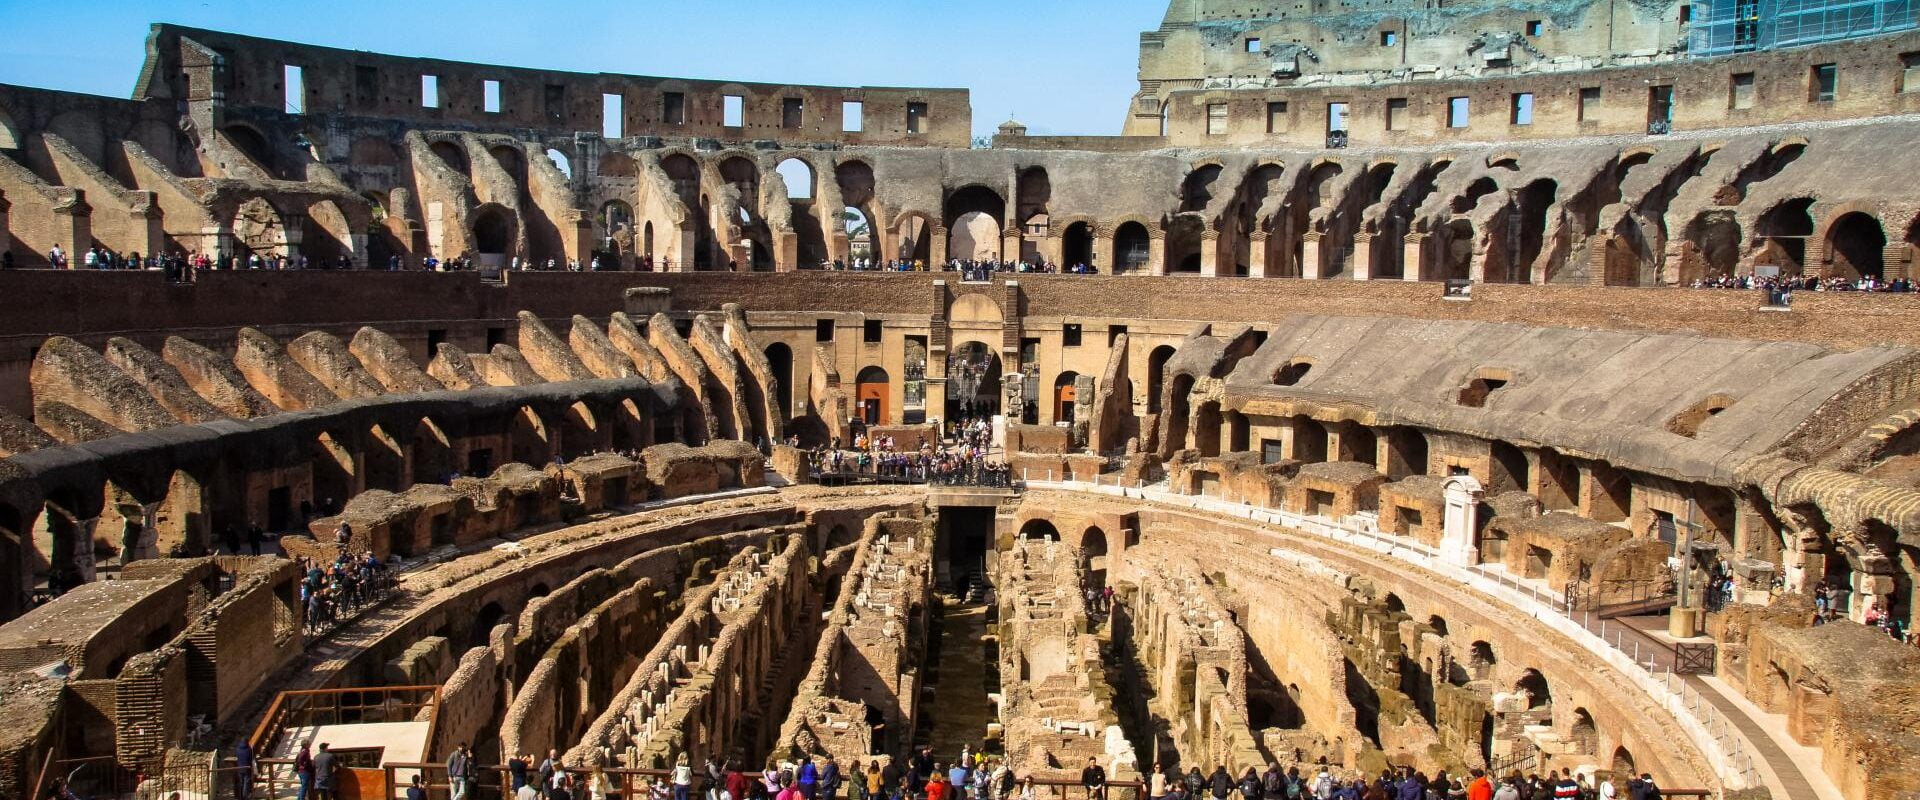 Zwiedzanie Koloseum, Forum Romanum i Palatynu w 2023 r. Bilety, zasady i porady praktyczne (fot. Łukasz Ropczyński, kierunekwlochy.pl)